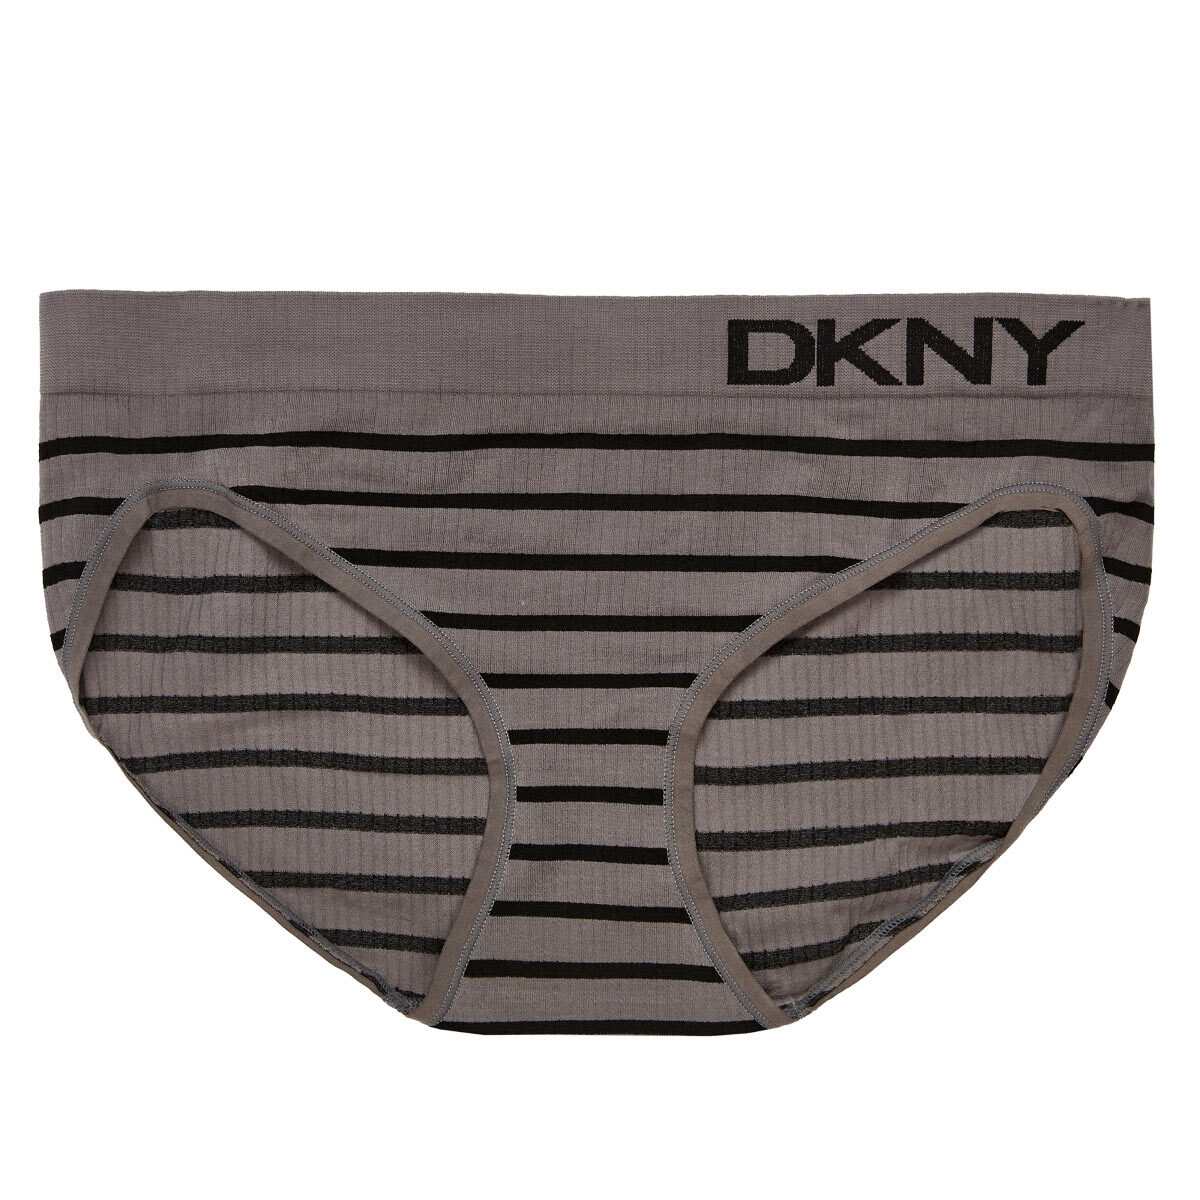 DKNY Women's Seamless Rib Knit 4 Pack Bikini Brief in Black/Grey